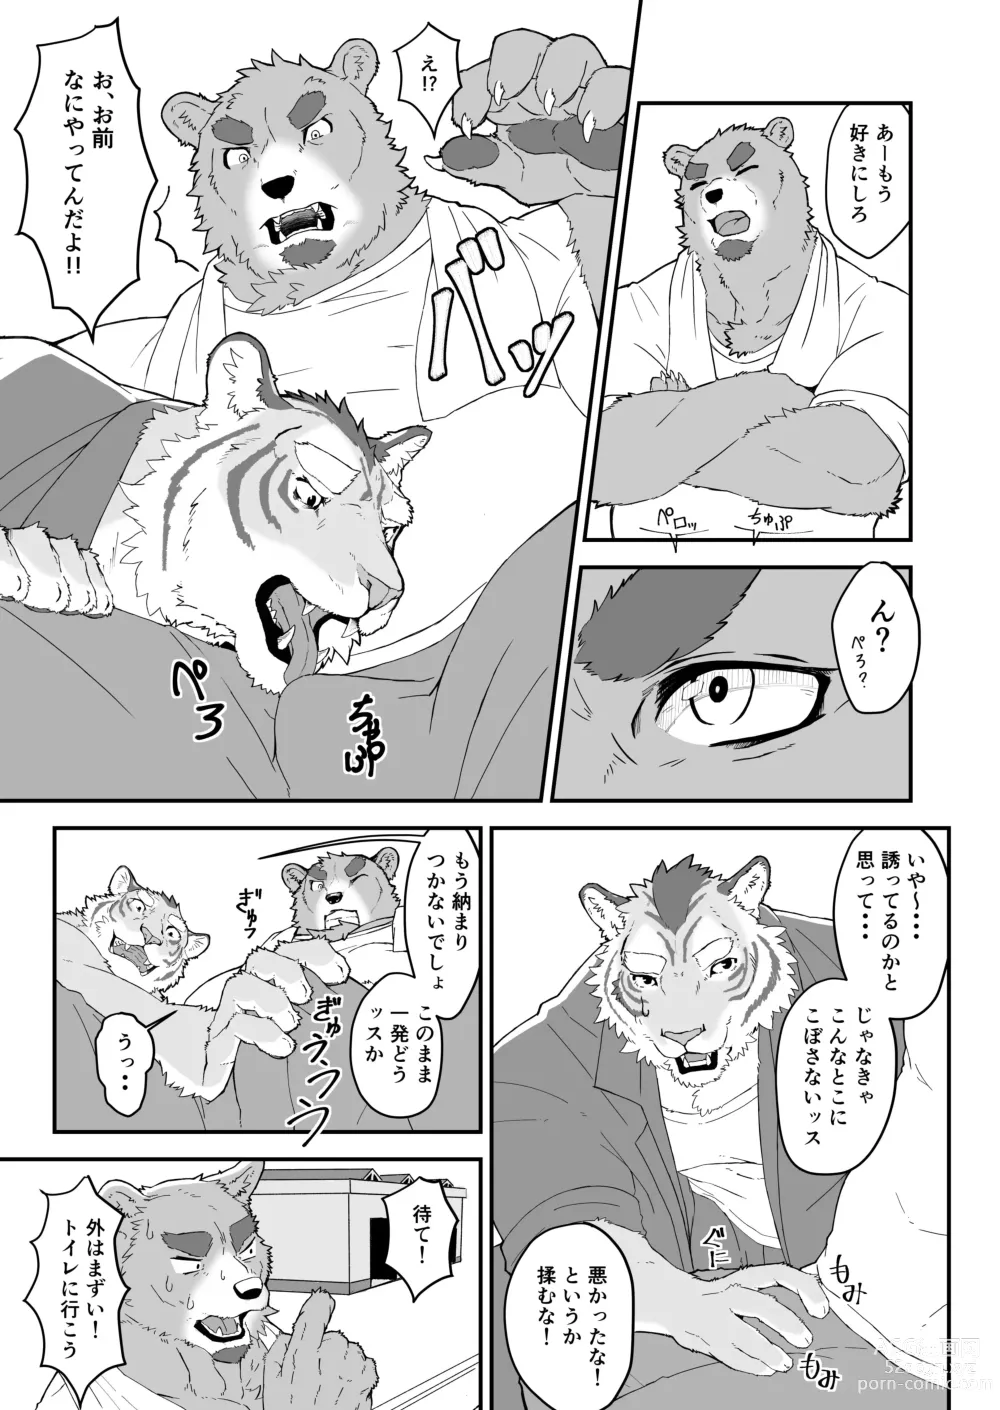 Page 5 of doujinshi Shiranuri Shokunin